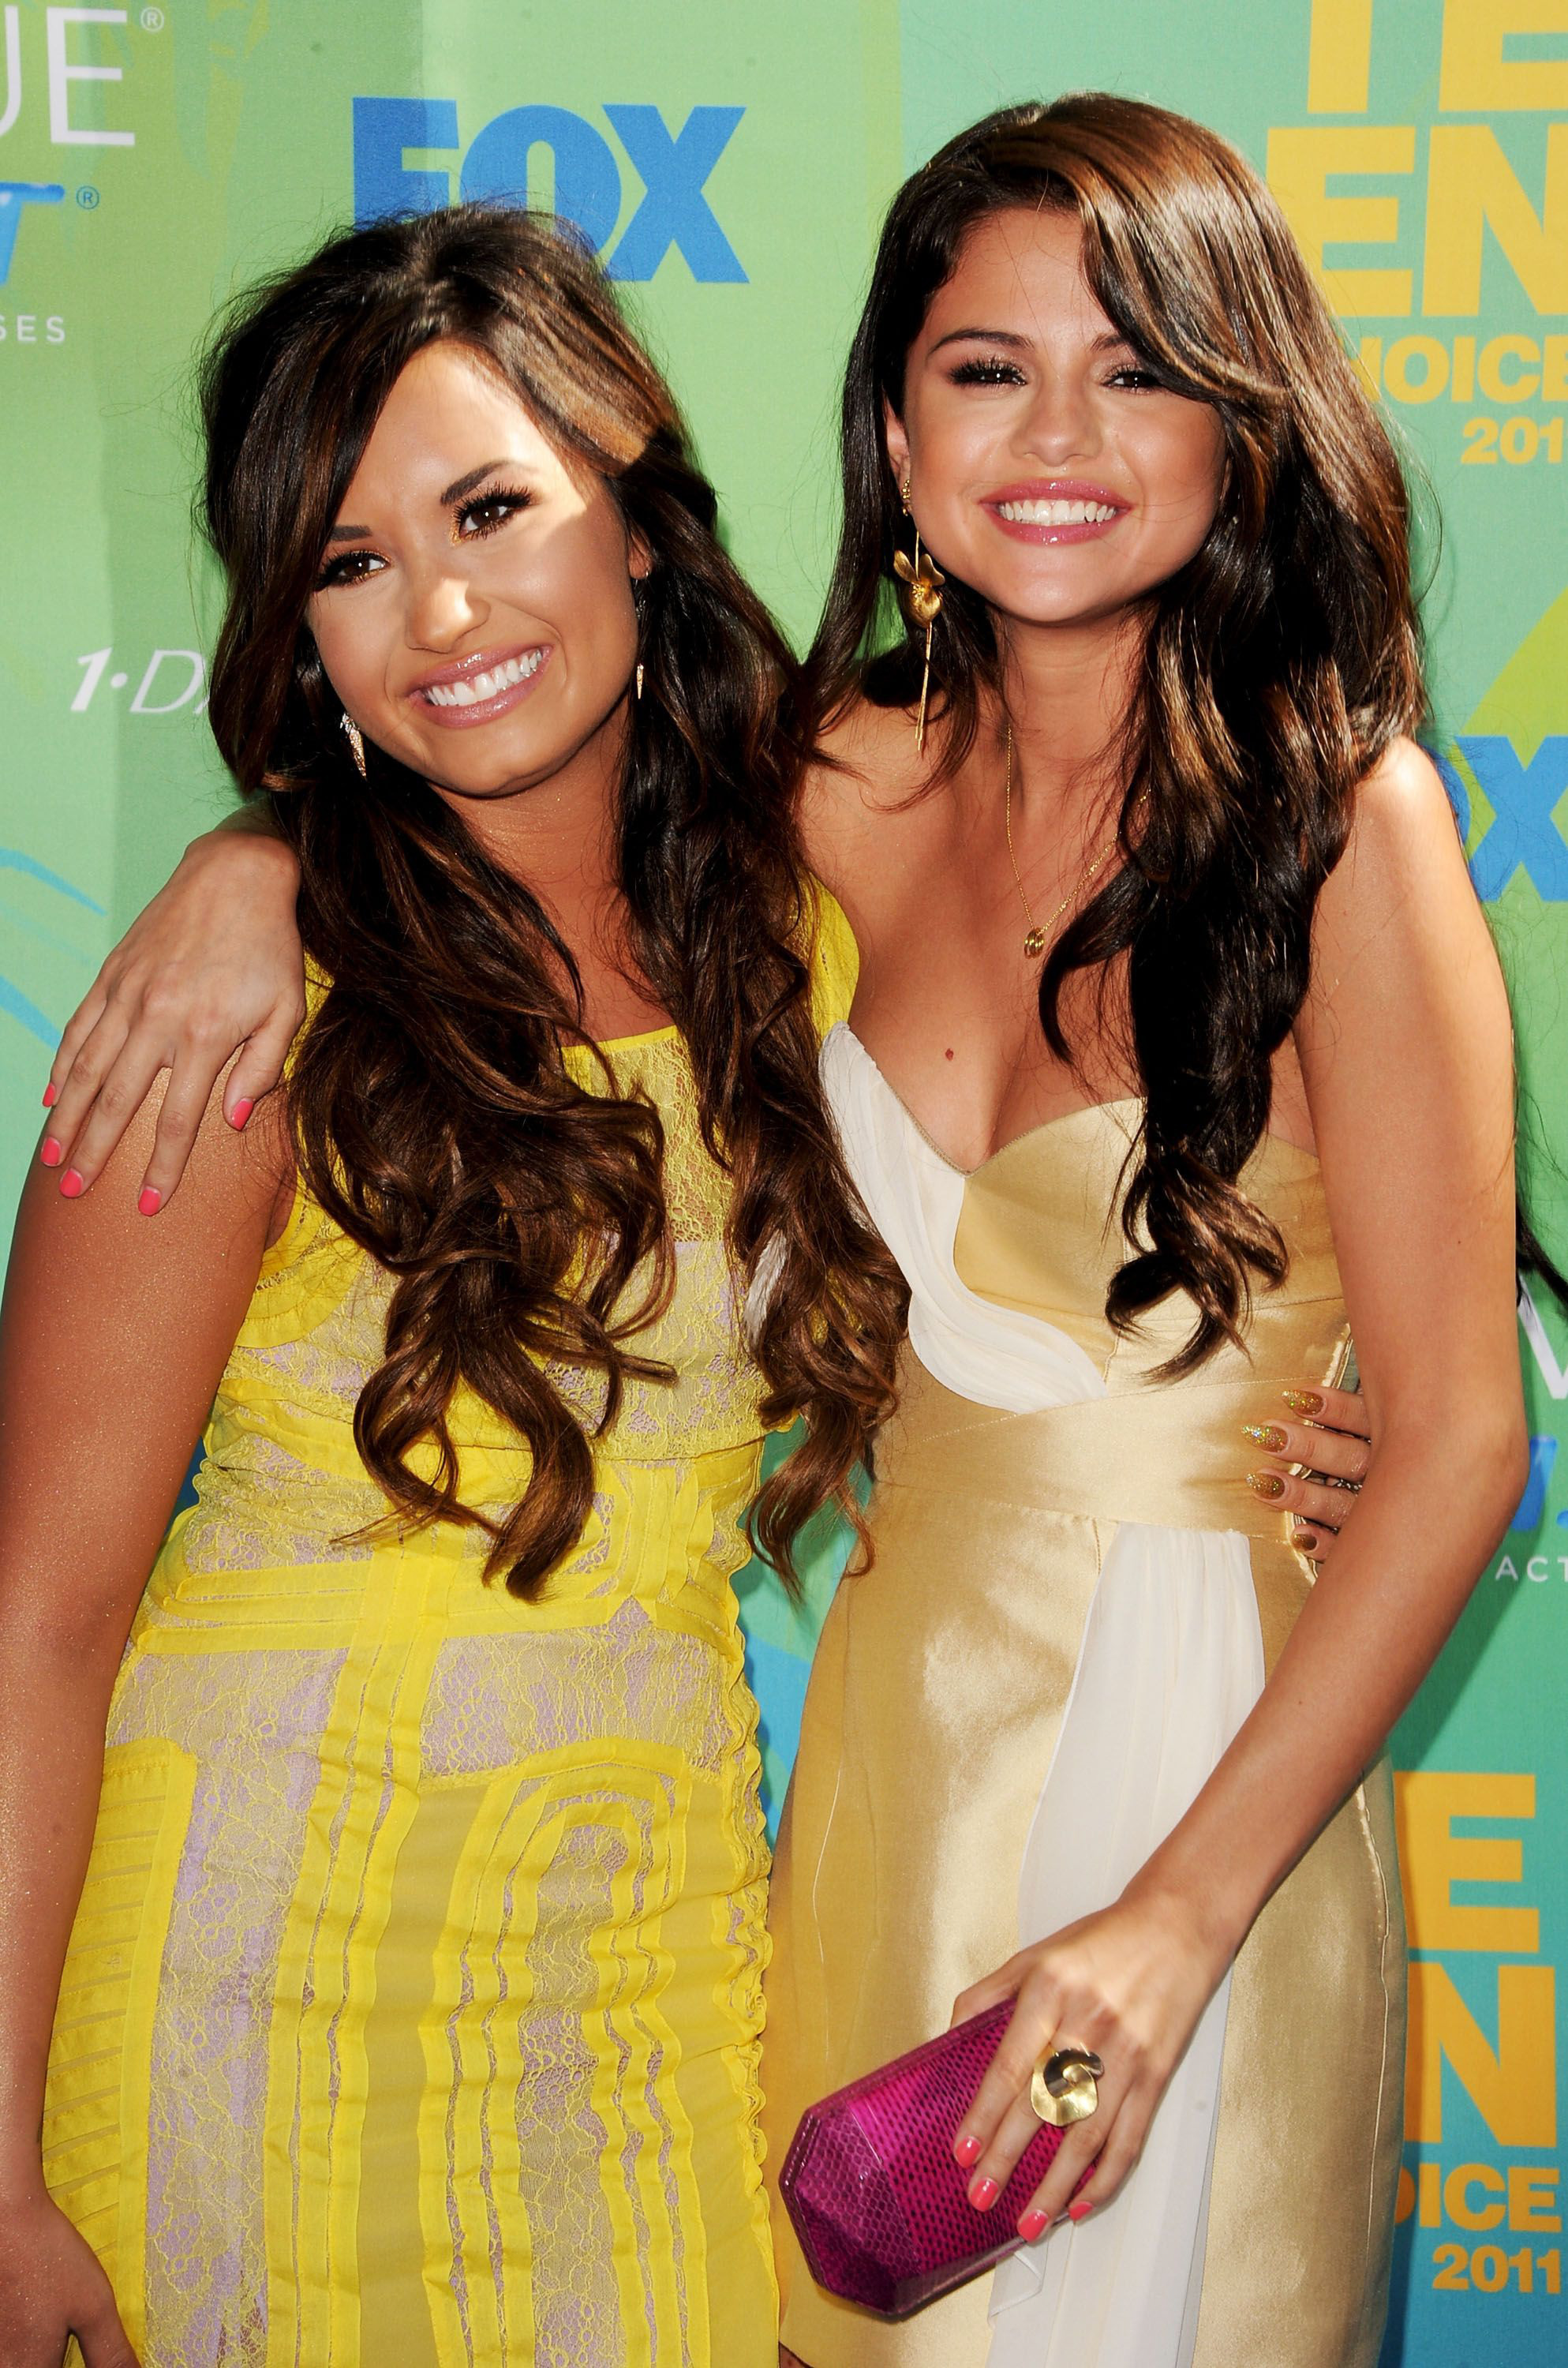 Demi Lovato thẳng mặt tuyên bố không còn chị em gì với Selena Gomez, cảm thấy khó hiểu vì hành động này của bạn cũ - Ảnh 4.